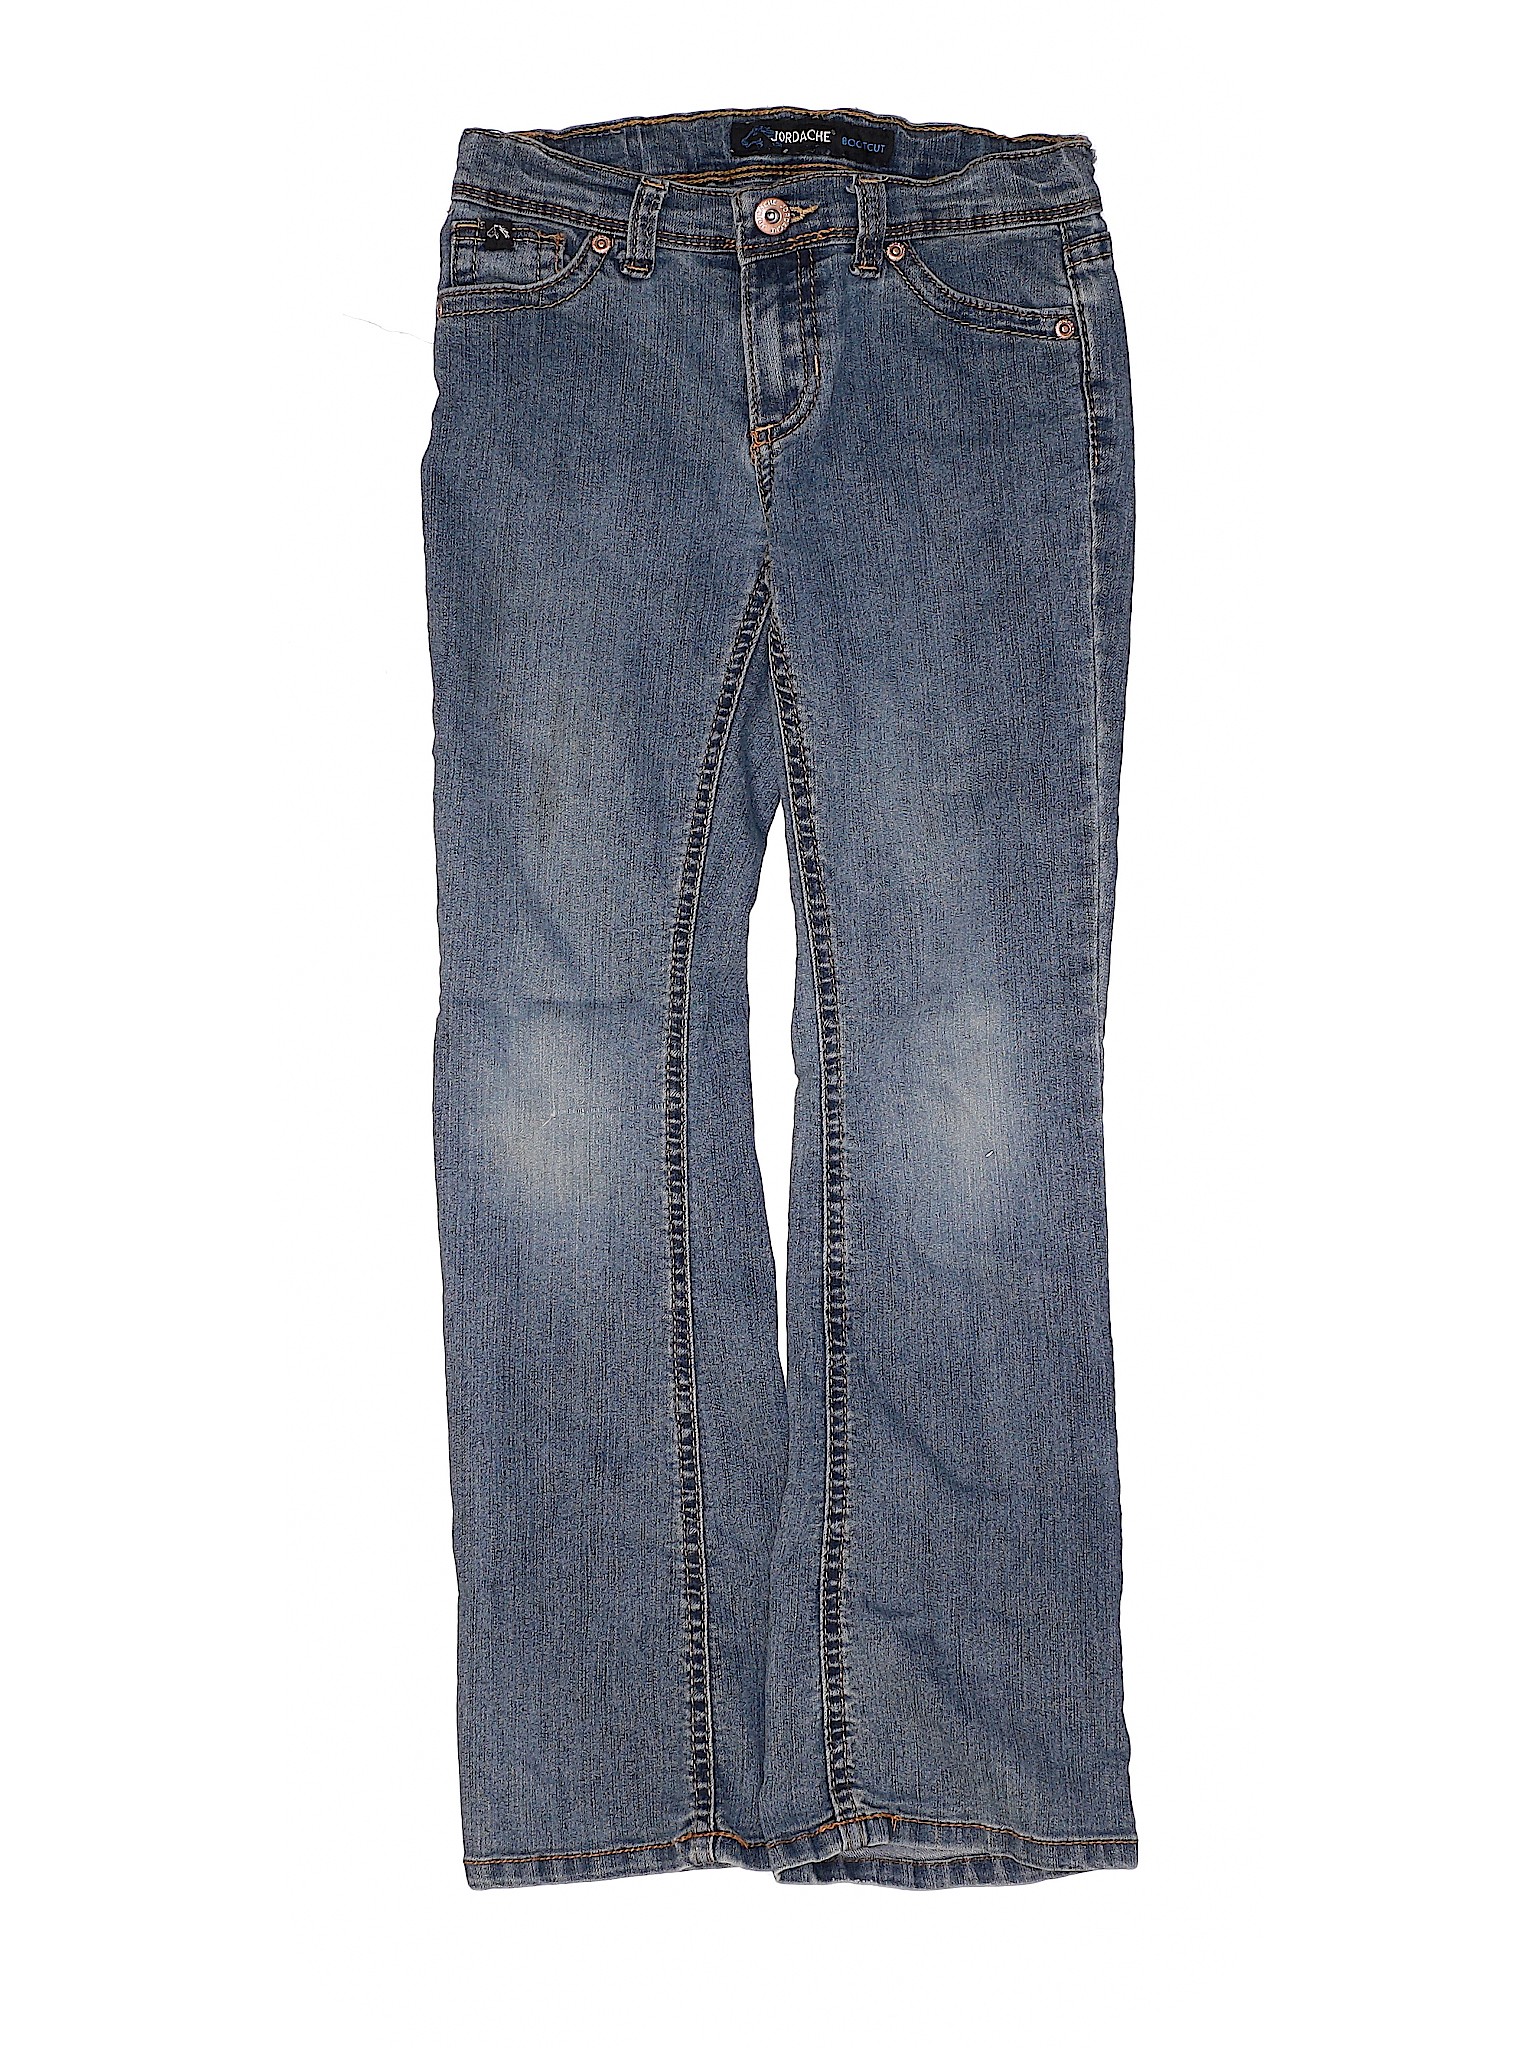 Jordache Girls Blue Jeans 8 | eBay